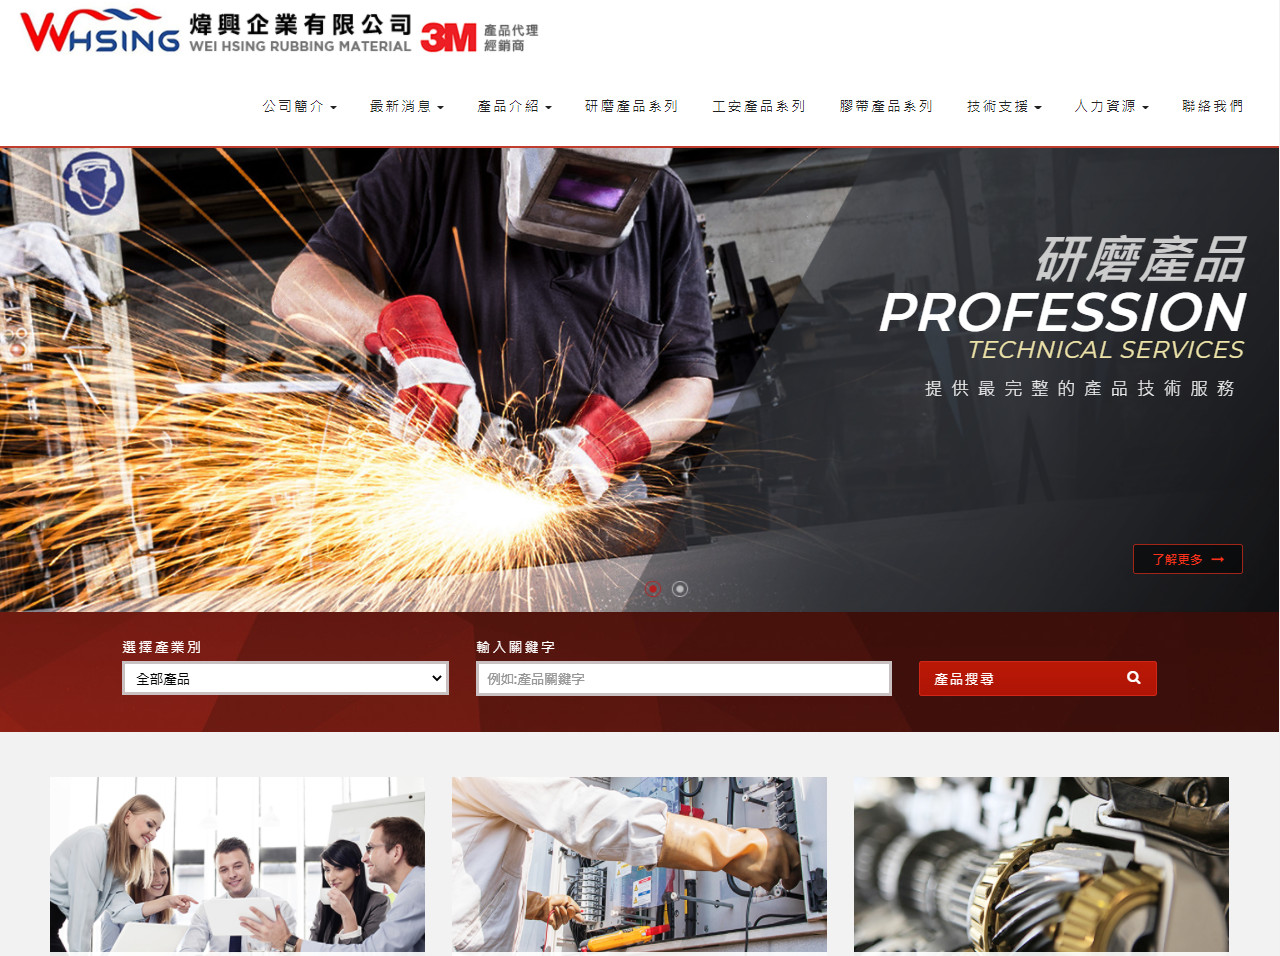 煒興企業有限公司-3M研磨工業代理 RWD響應式網頁設計
網站設計